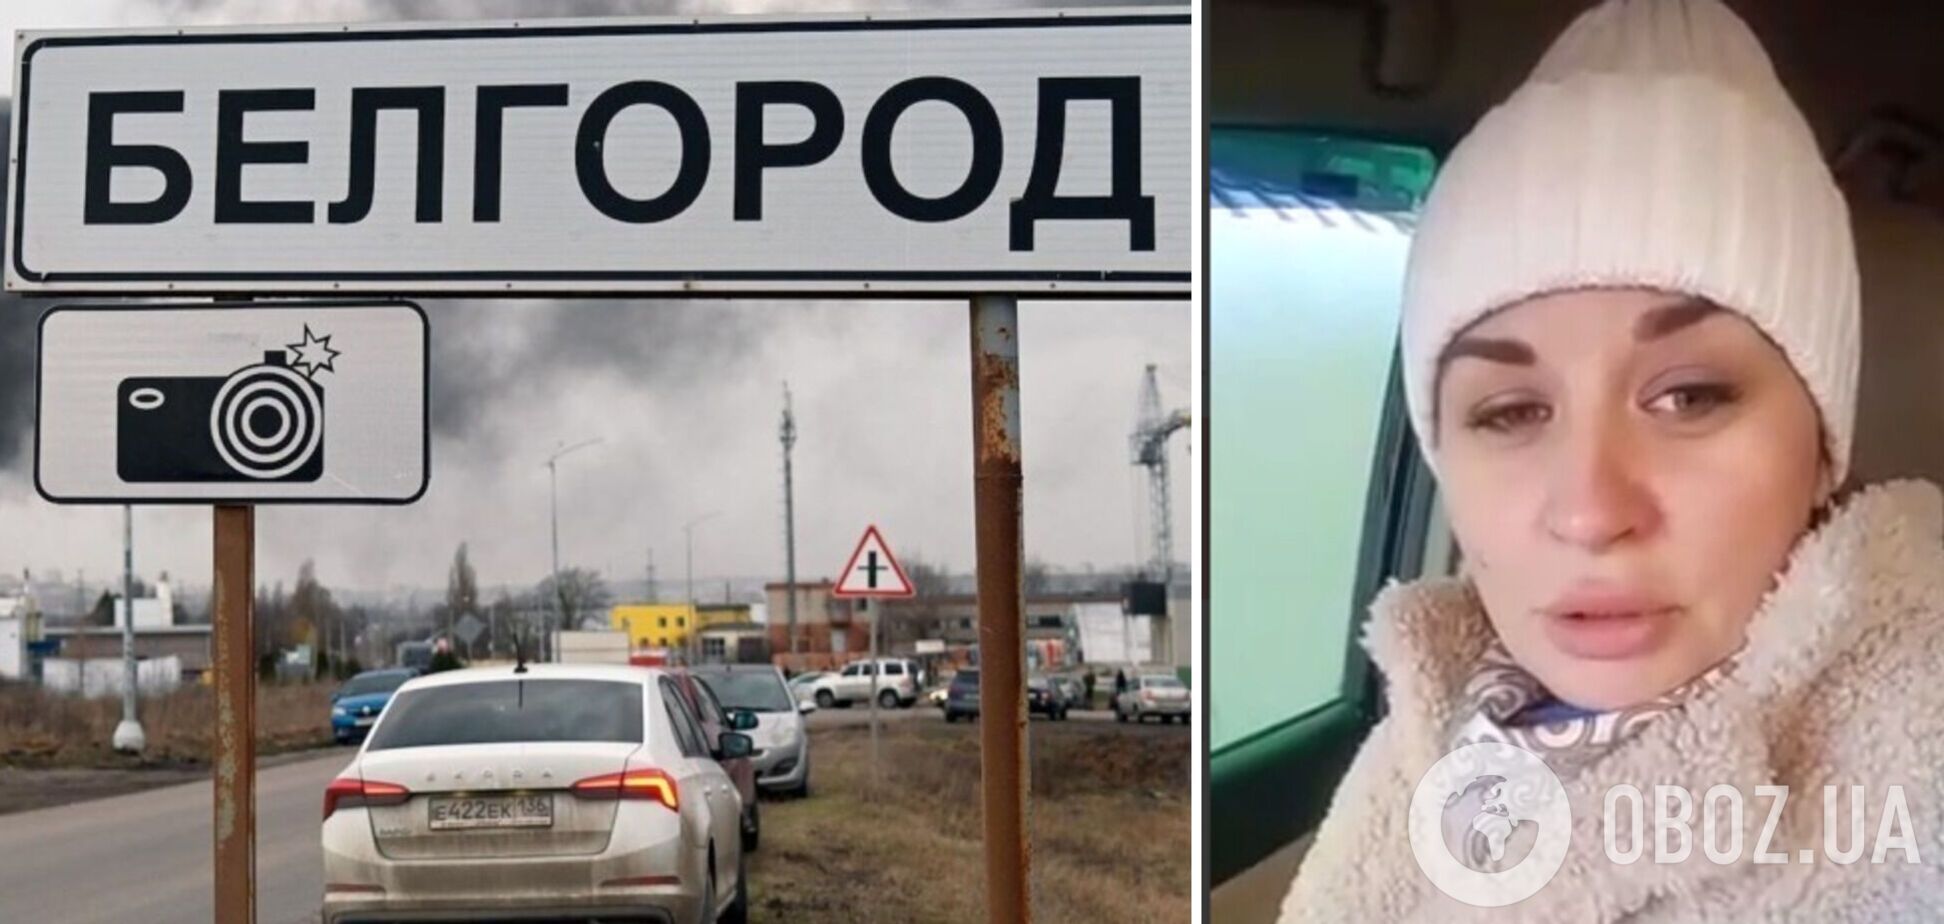 'Путін, допоможи! Ми не Луганськ, ми Росія': мешканка Бєлгородської області закликала врятувати їх від щоденних обстрілів. Відео